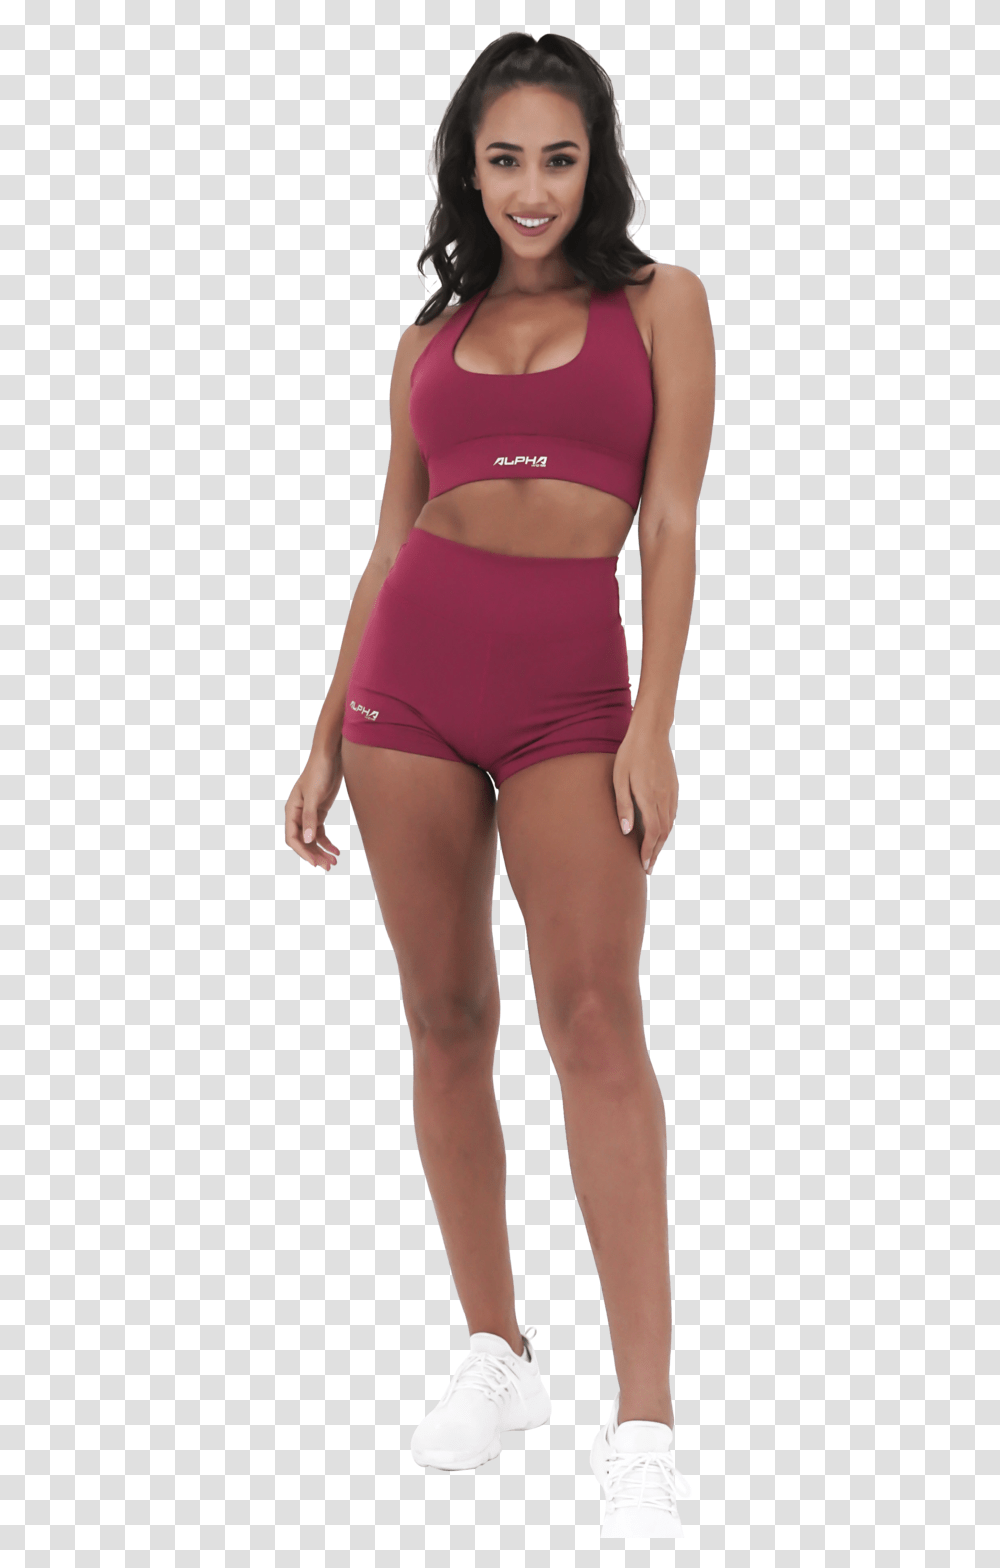 Scrunch Butt Shorts Girl, Apparel, Underwear, Lingerie Transparent Png